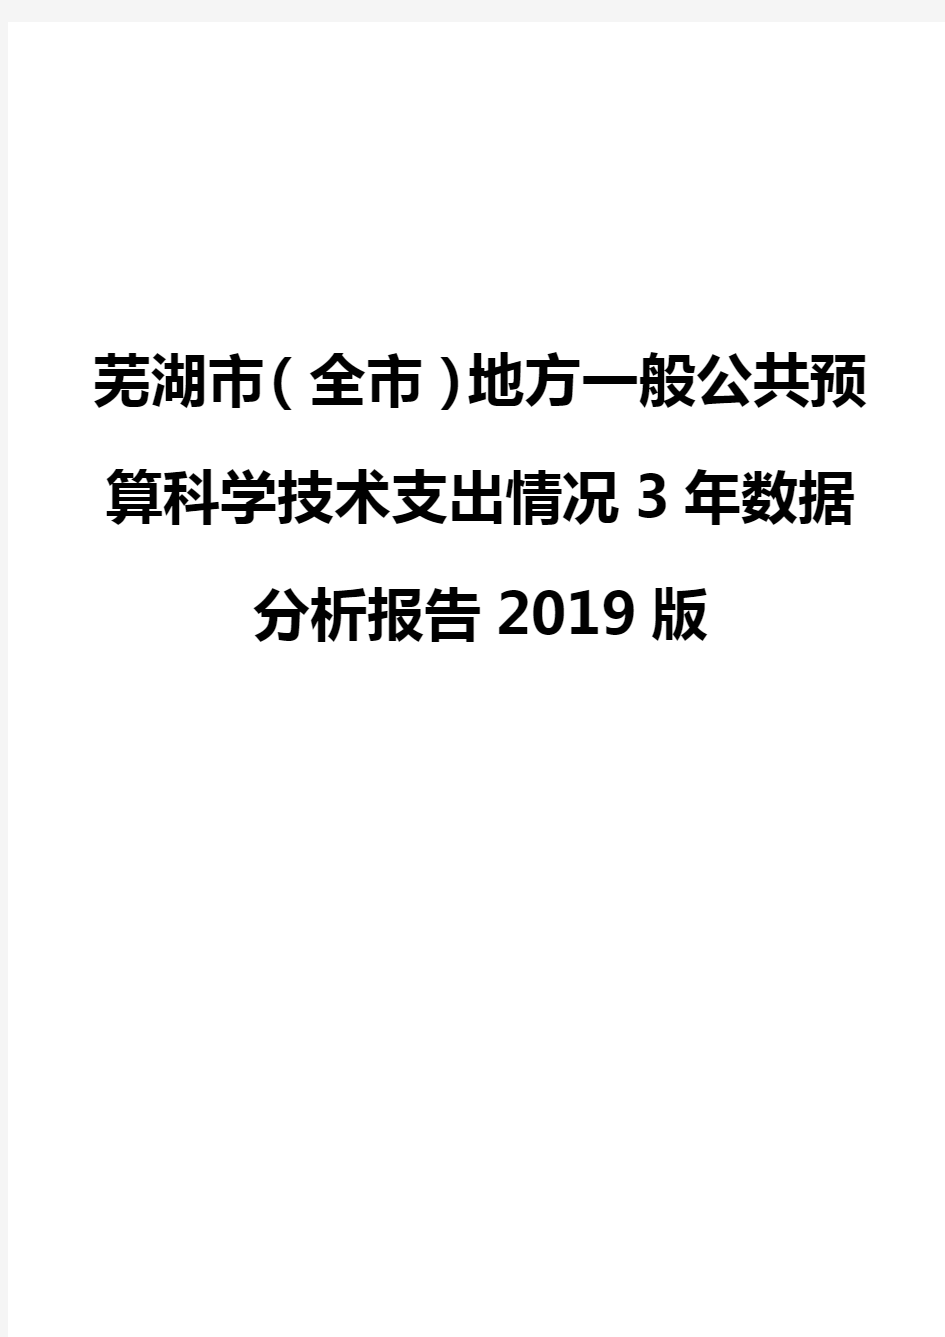 芜湖市(全市)地方一般公共预算科学技术支出情况3年数据分析报告2019版